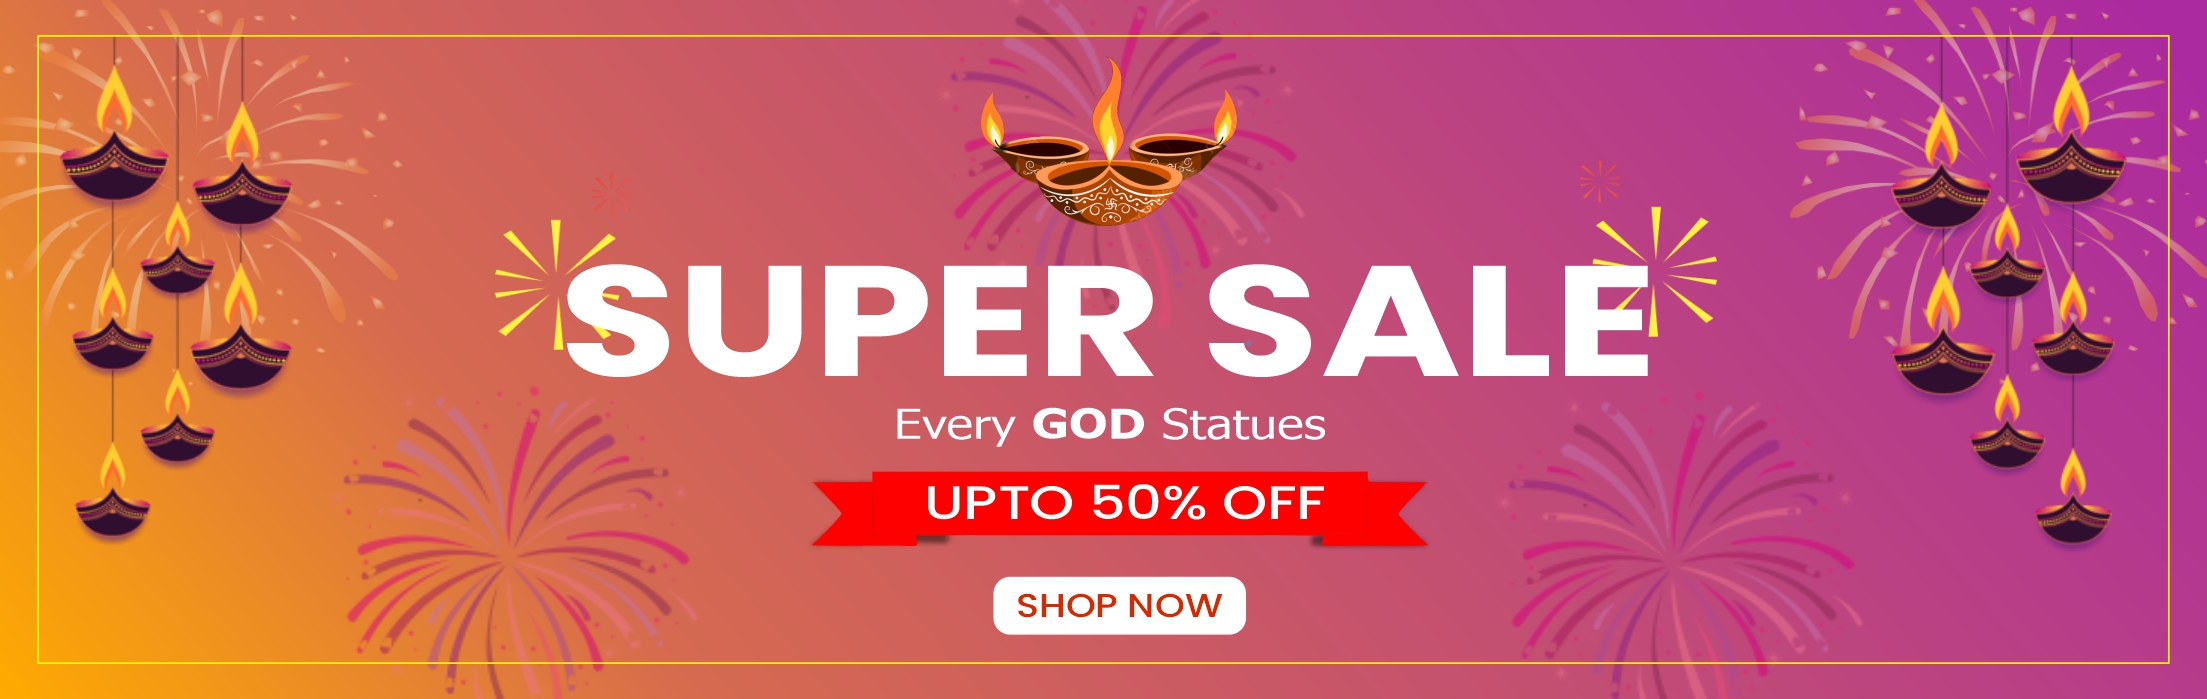 Super Sale God Statues